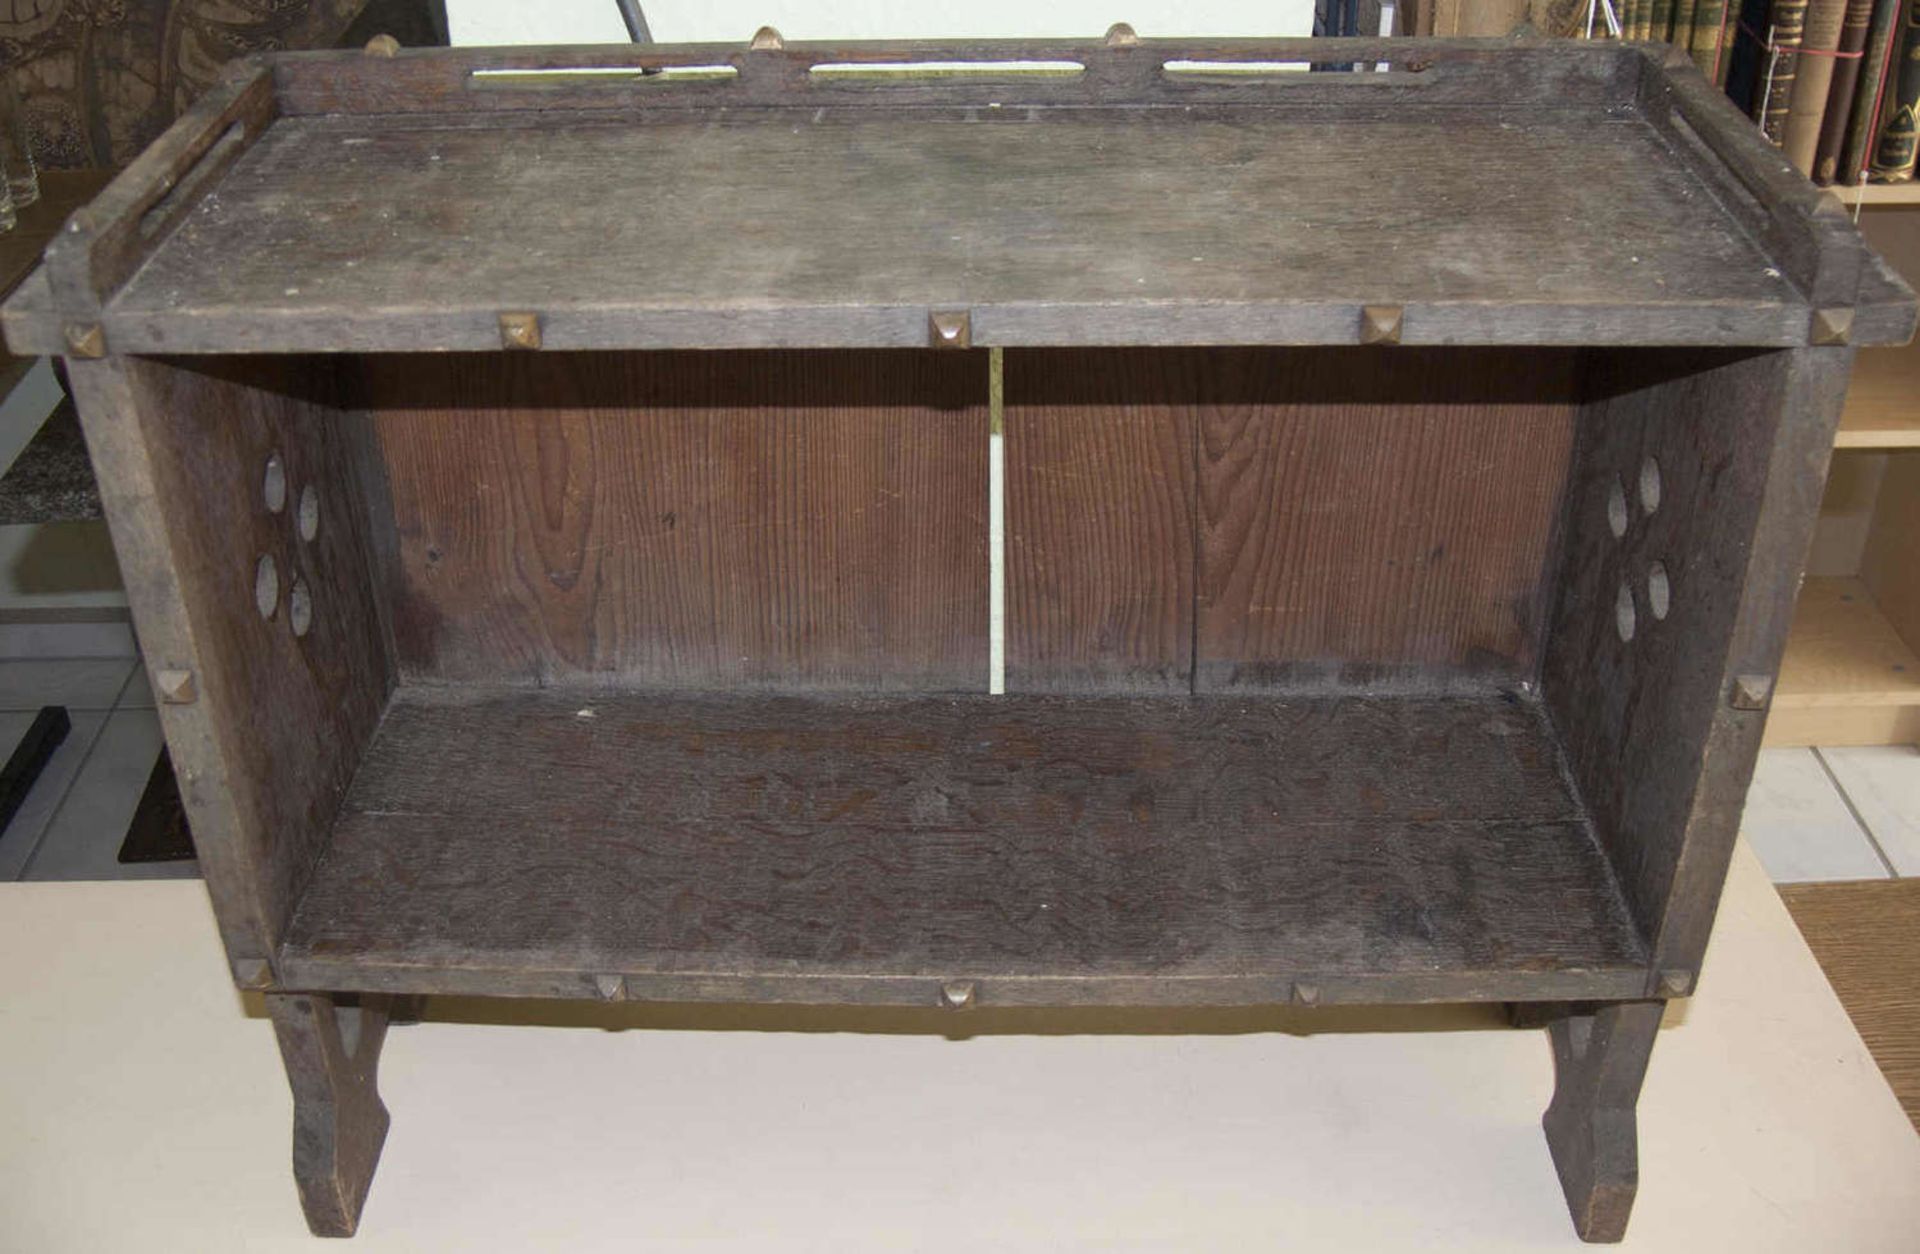 Uralter Schrankaufsatz, Holz, Maße: ca. 61 cm x ca. 20 cm x ca. 46 cm (B x T x H).Antique cupboard